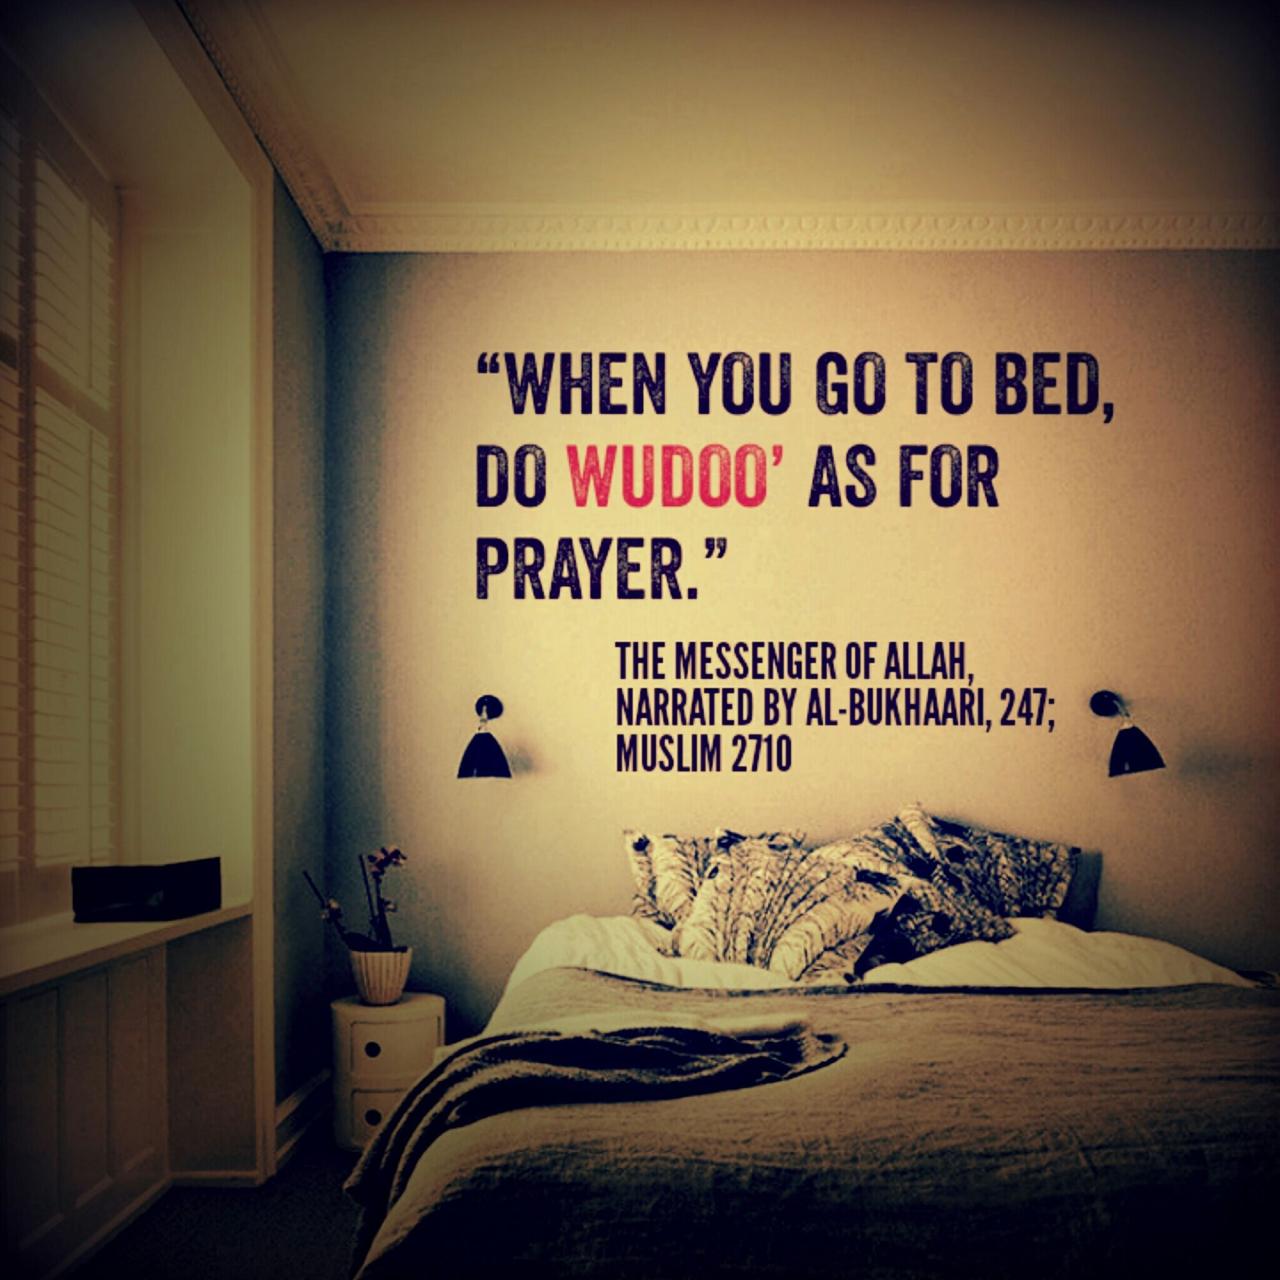 Doa sebelum tidur sesuai sunnah